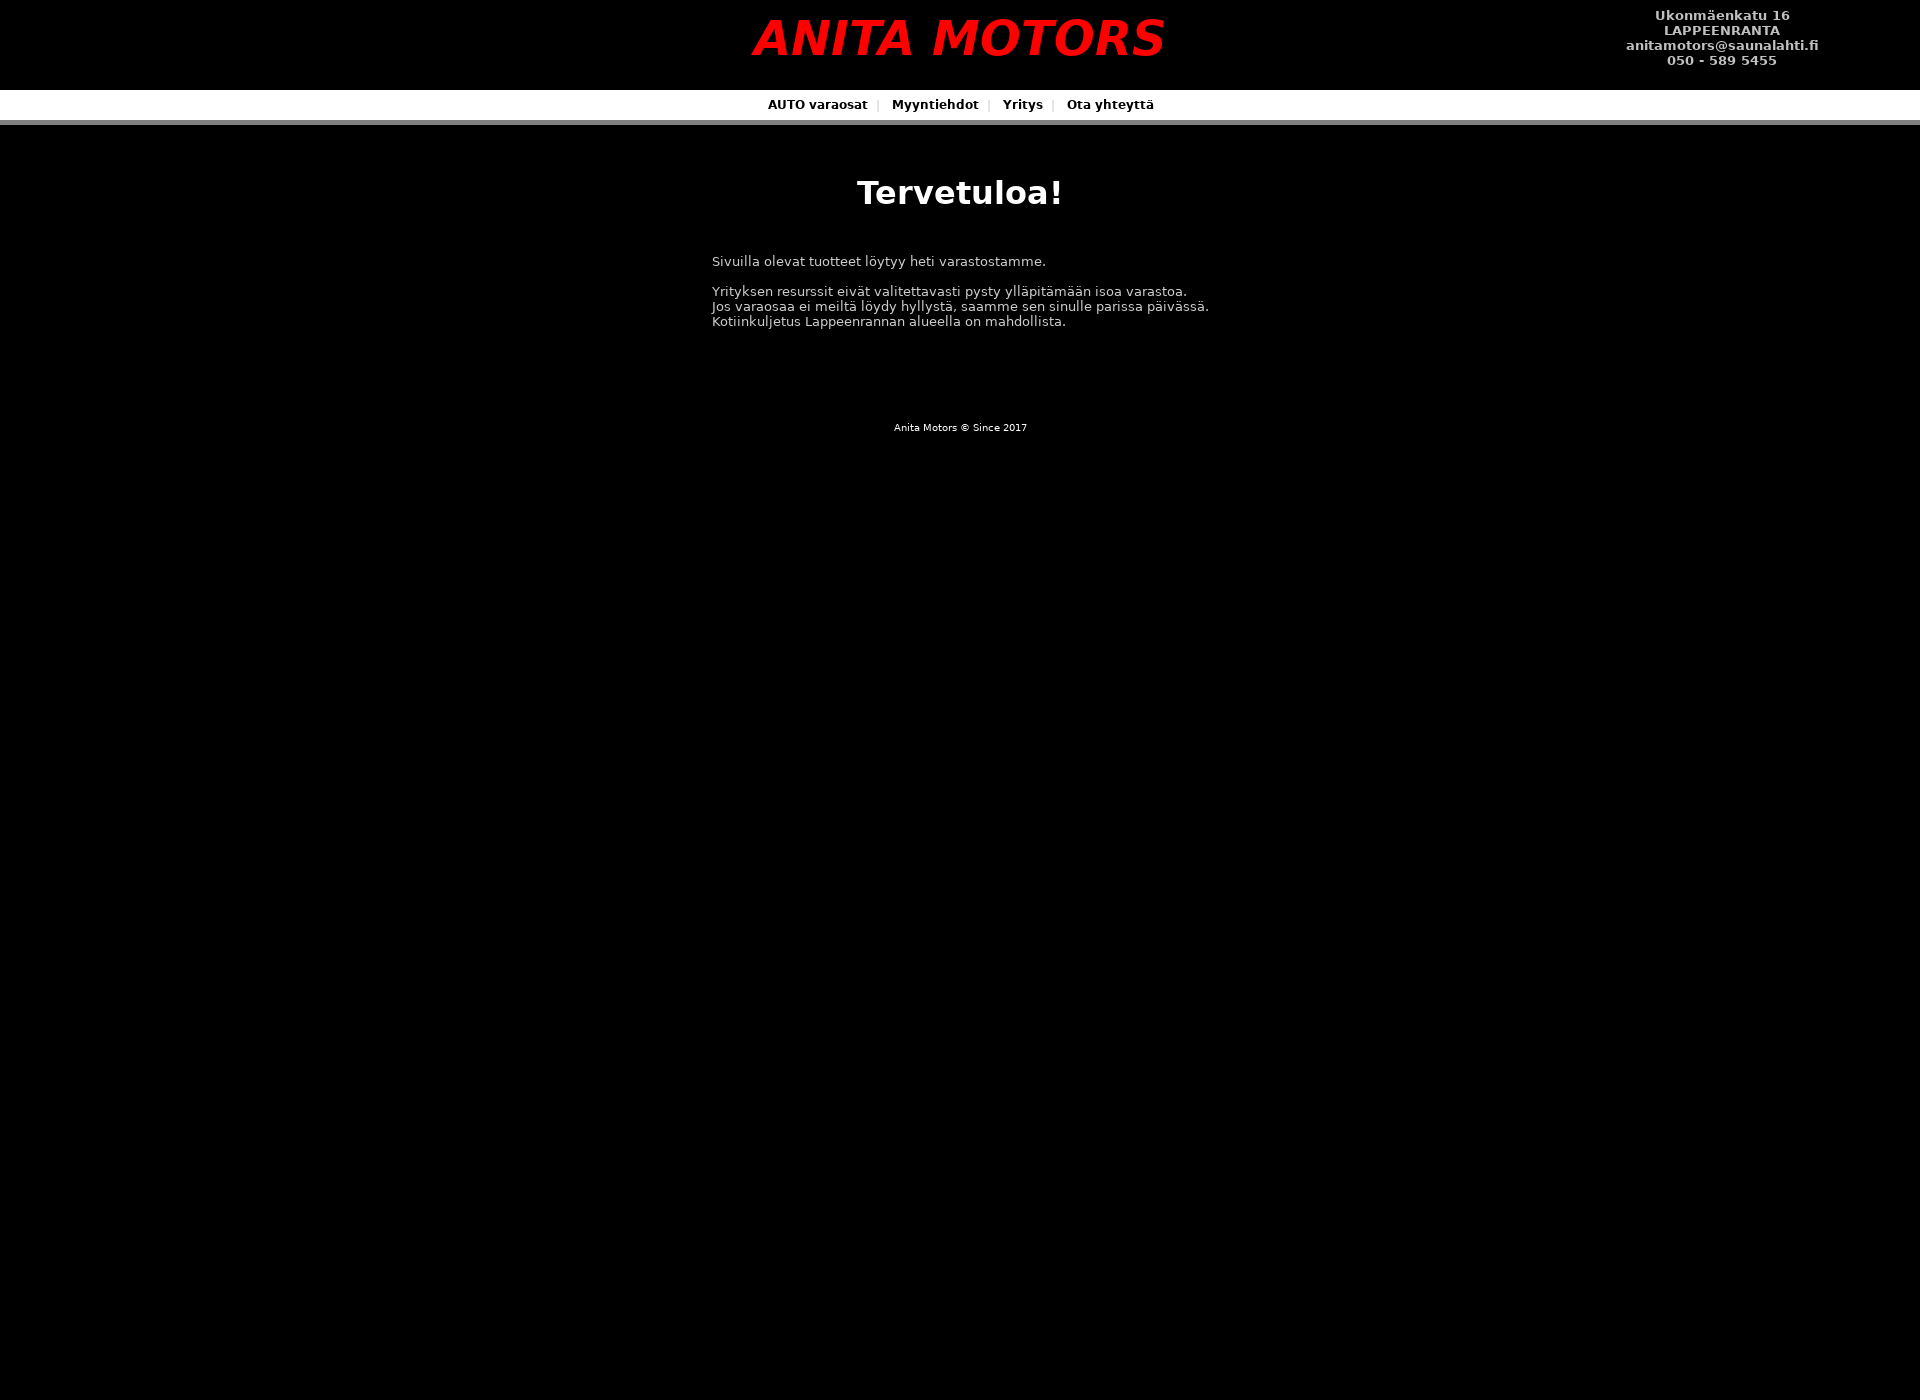 Screenshot for anitamotors.fi